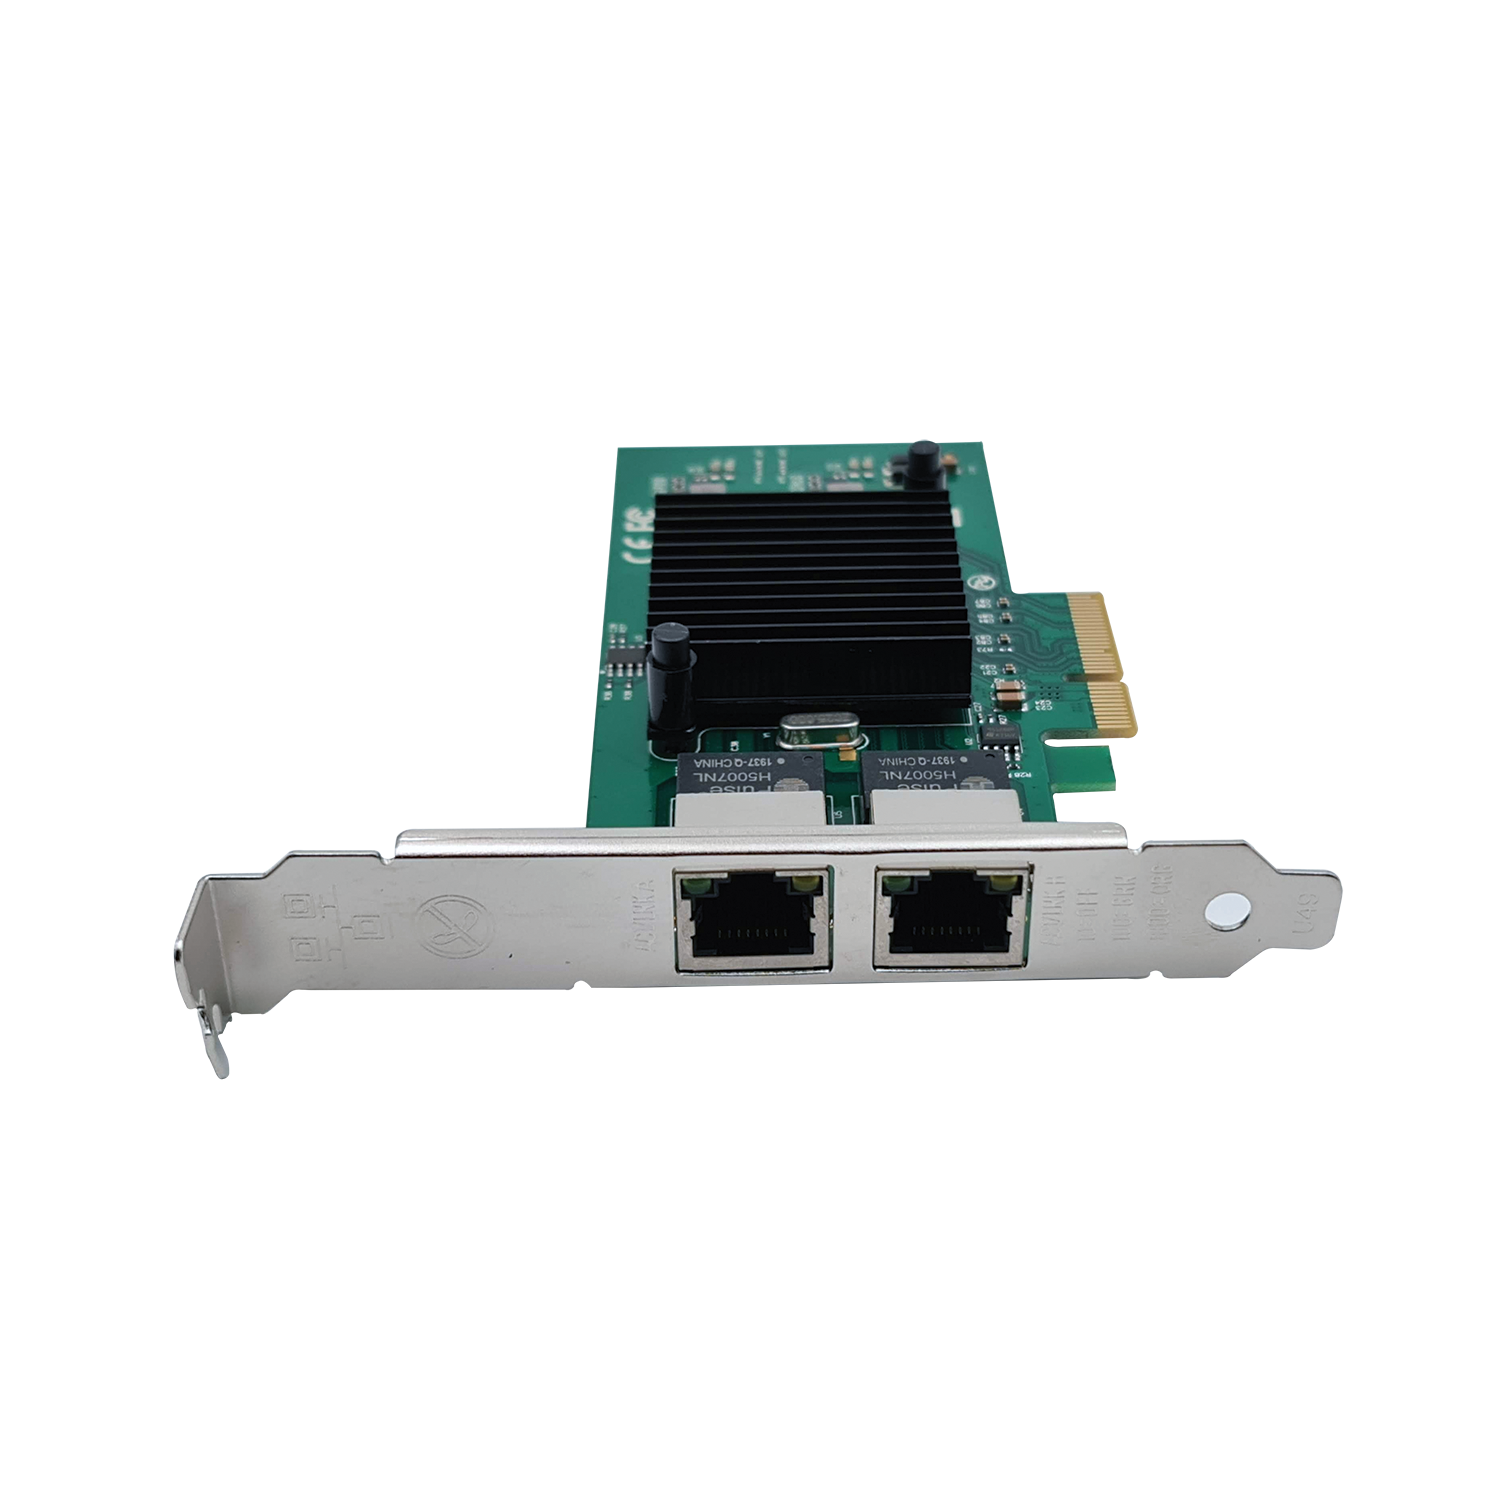 Carte réseau PCIe GIGABIT ETHERNET 2 ports - INTEL I82576 - Low